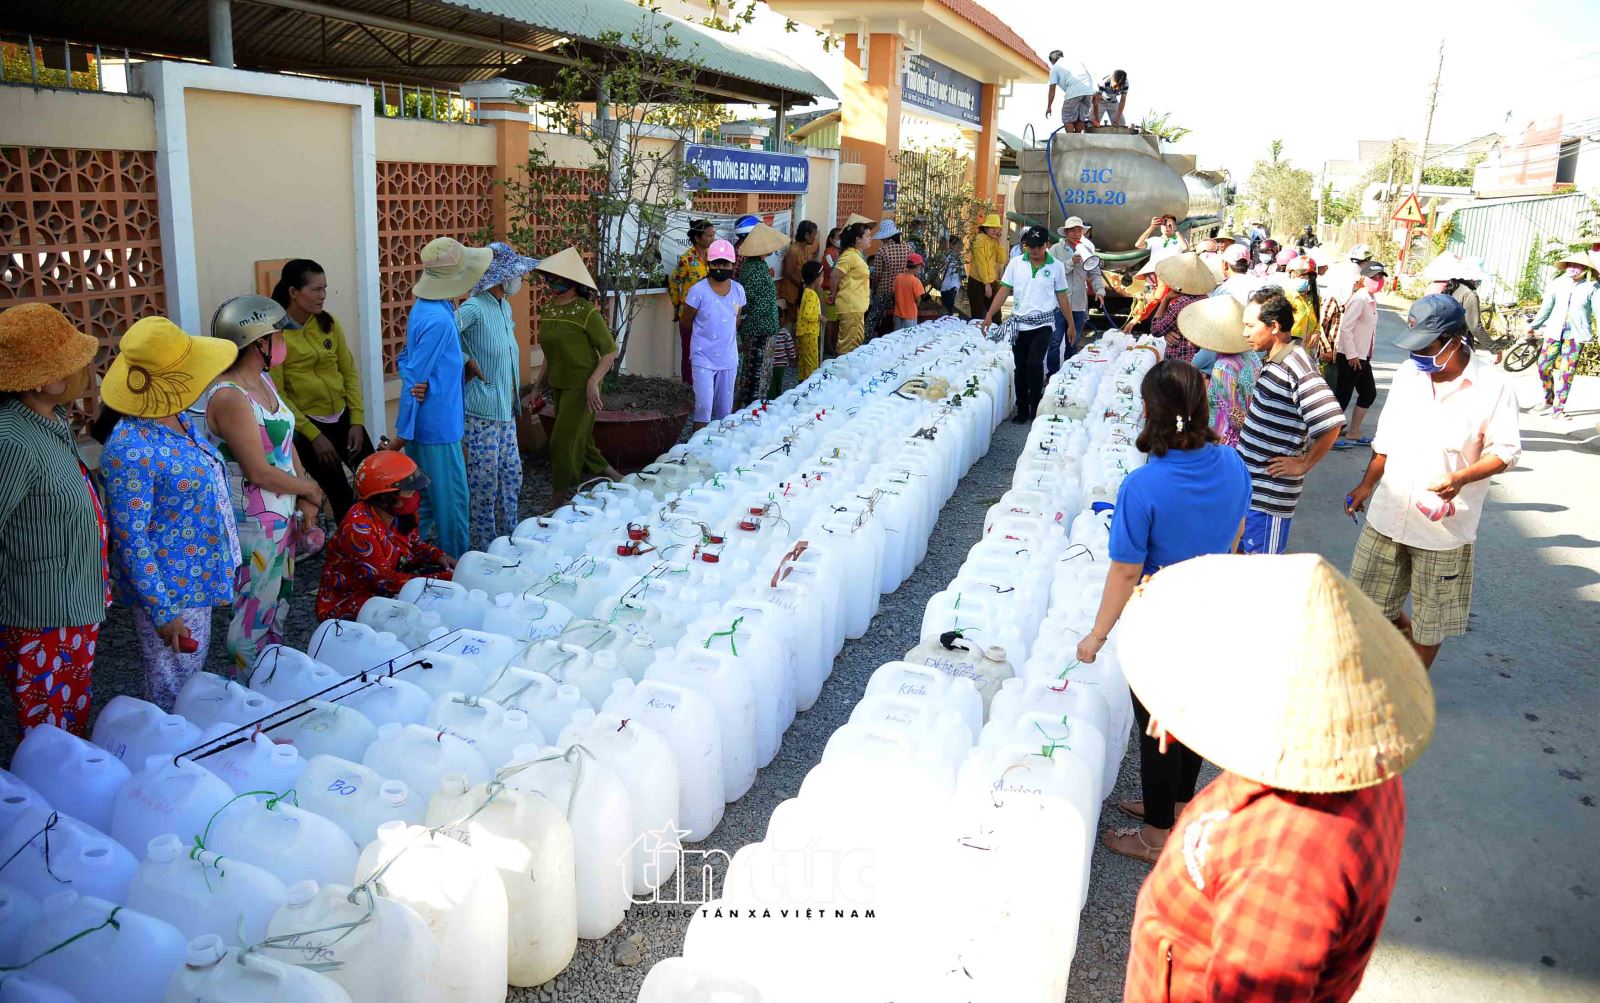 Riêng xã Tân Phước, có gần 3.500 hộ với gần 18.000 nhân khẩu đang bị thiếu nước sinh hoạt. Các xã khác thuộc huyện Gò Công Đông cũng đang lâm vào cảnh tương tự.